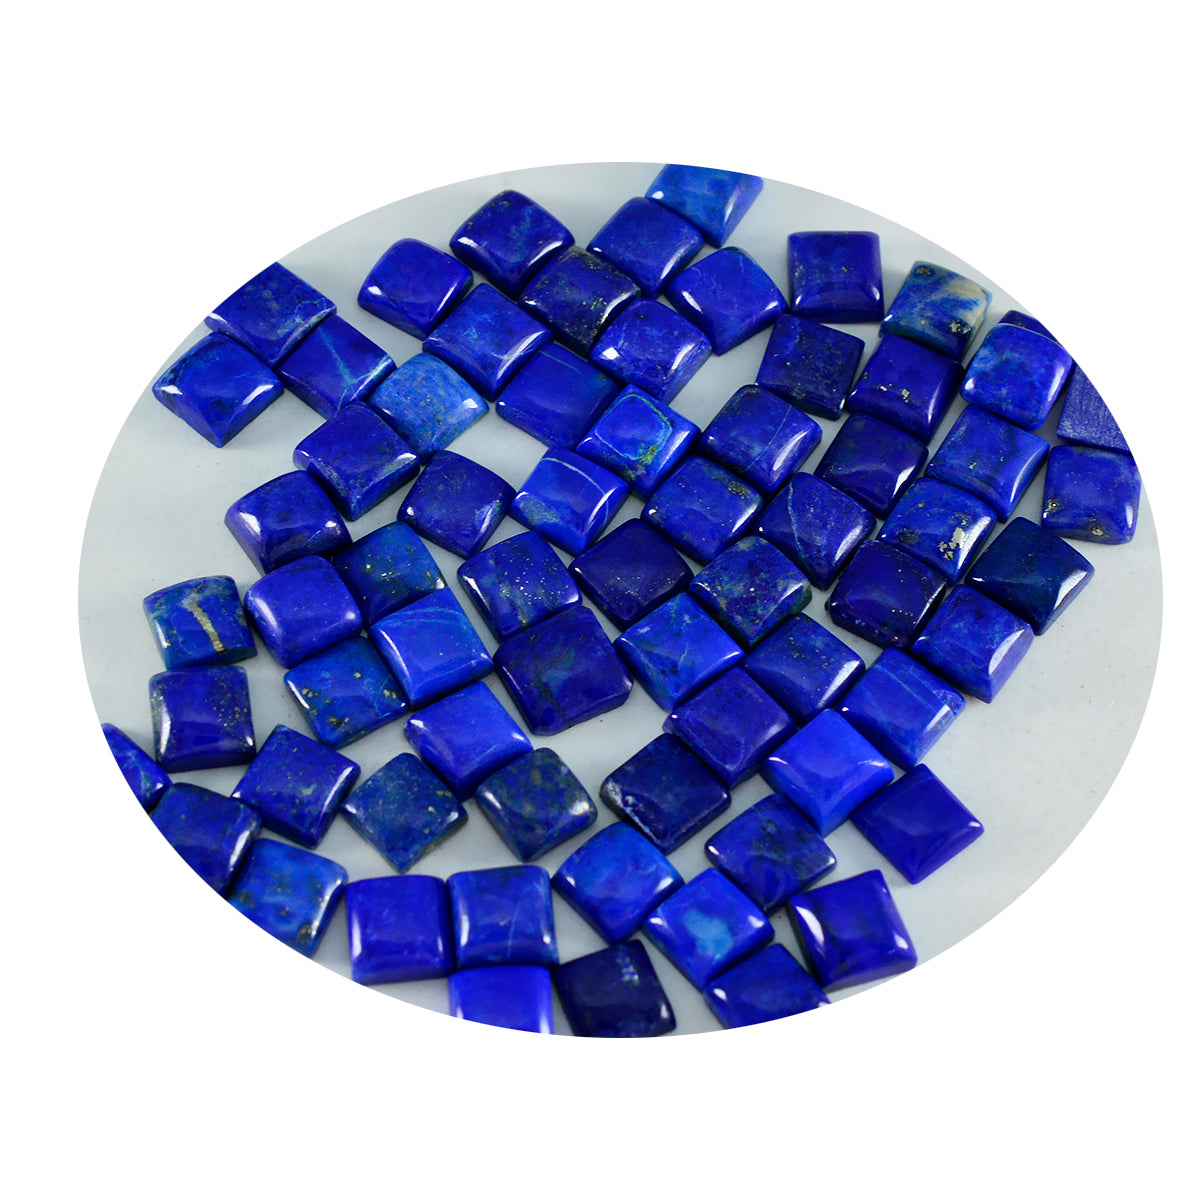 Riyogems 1 pieza cabujón de lapislázuli azul 6x6 mm forma cuadrada gemas de calidad increíble